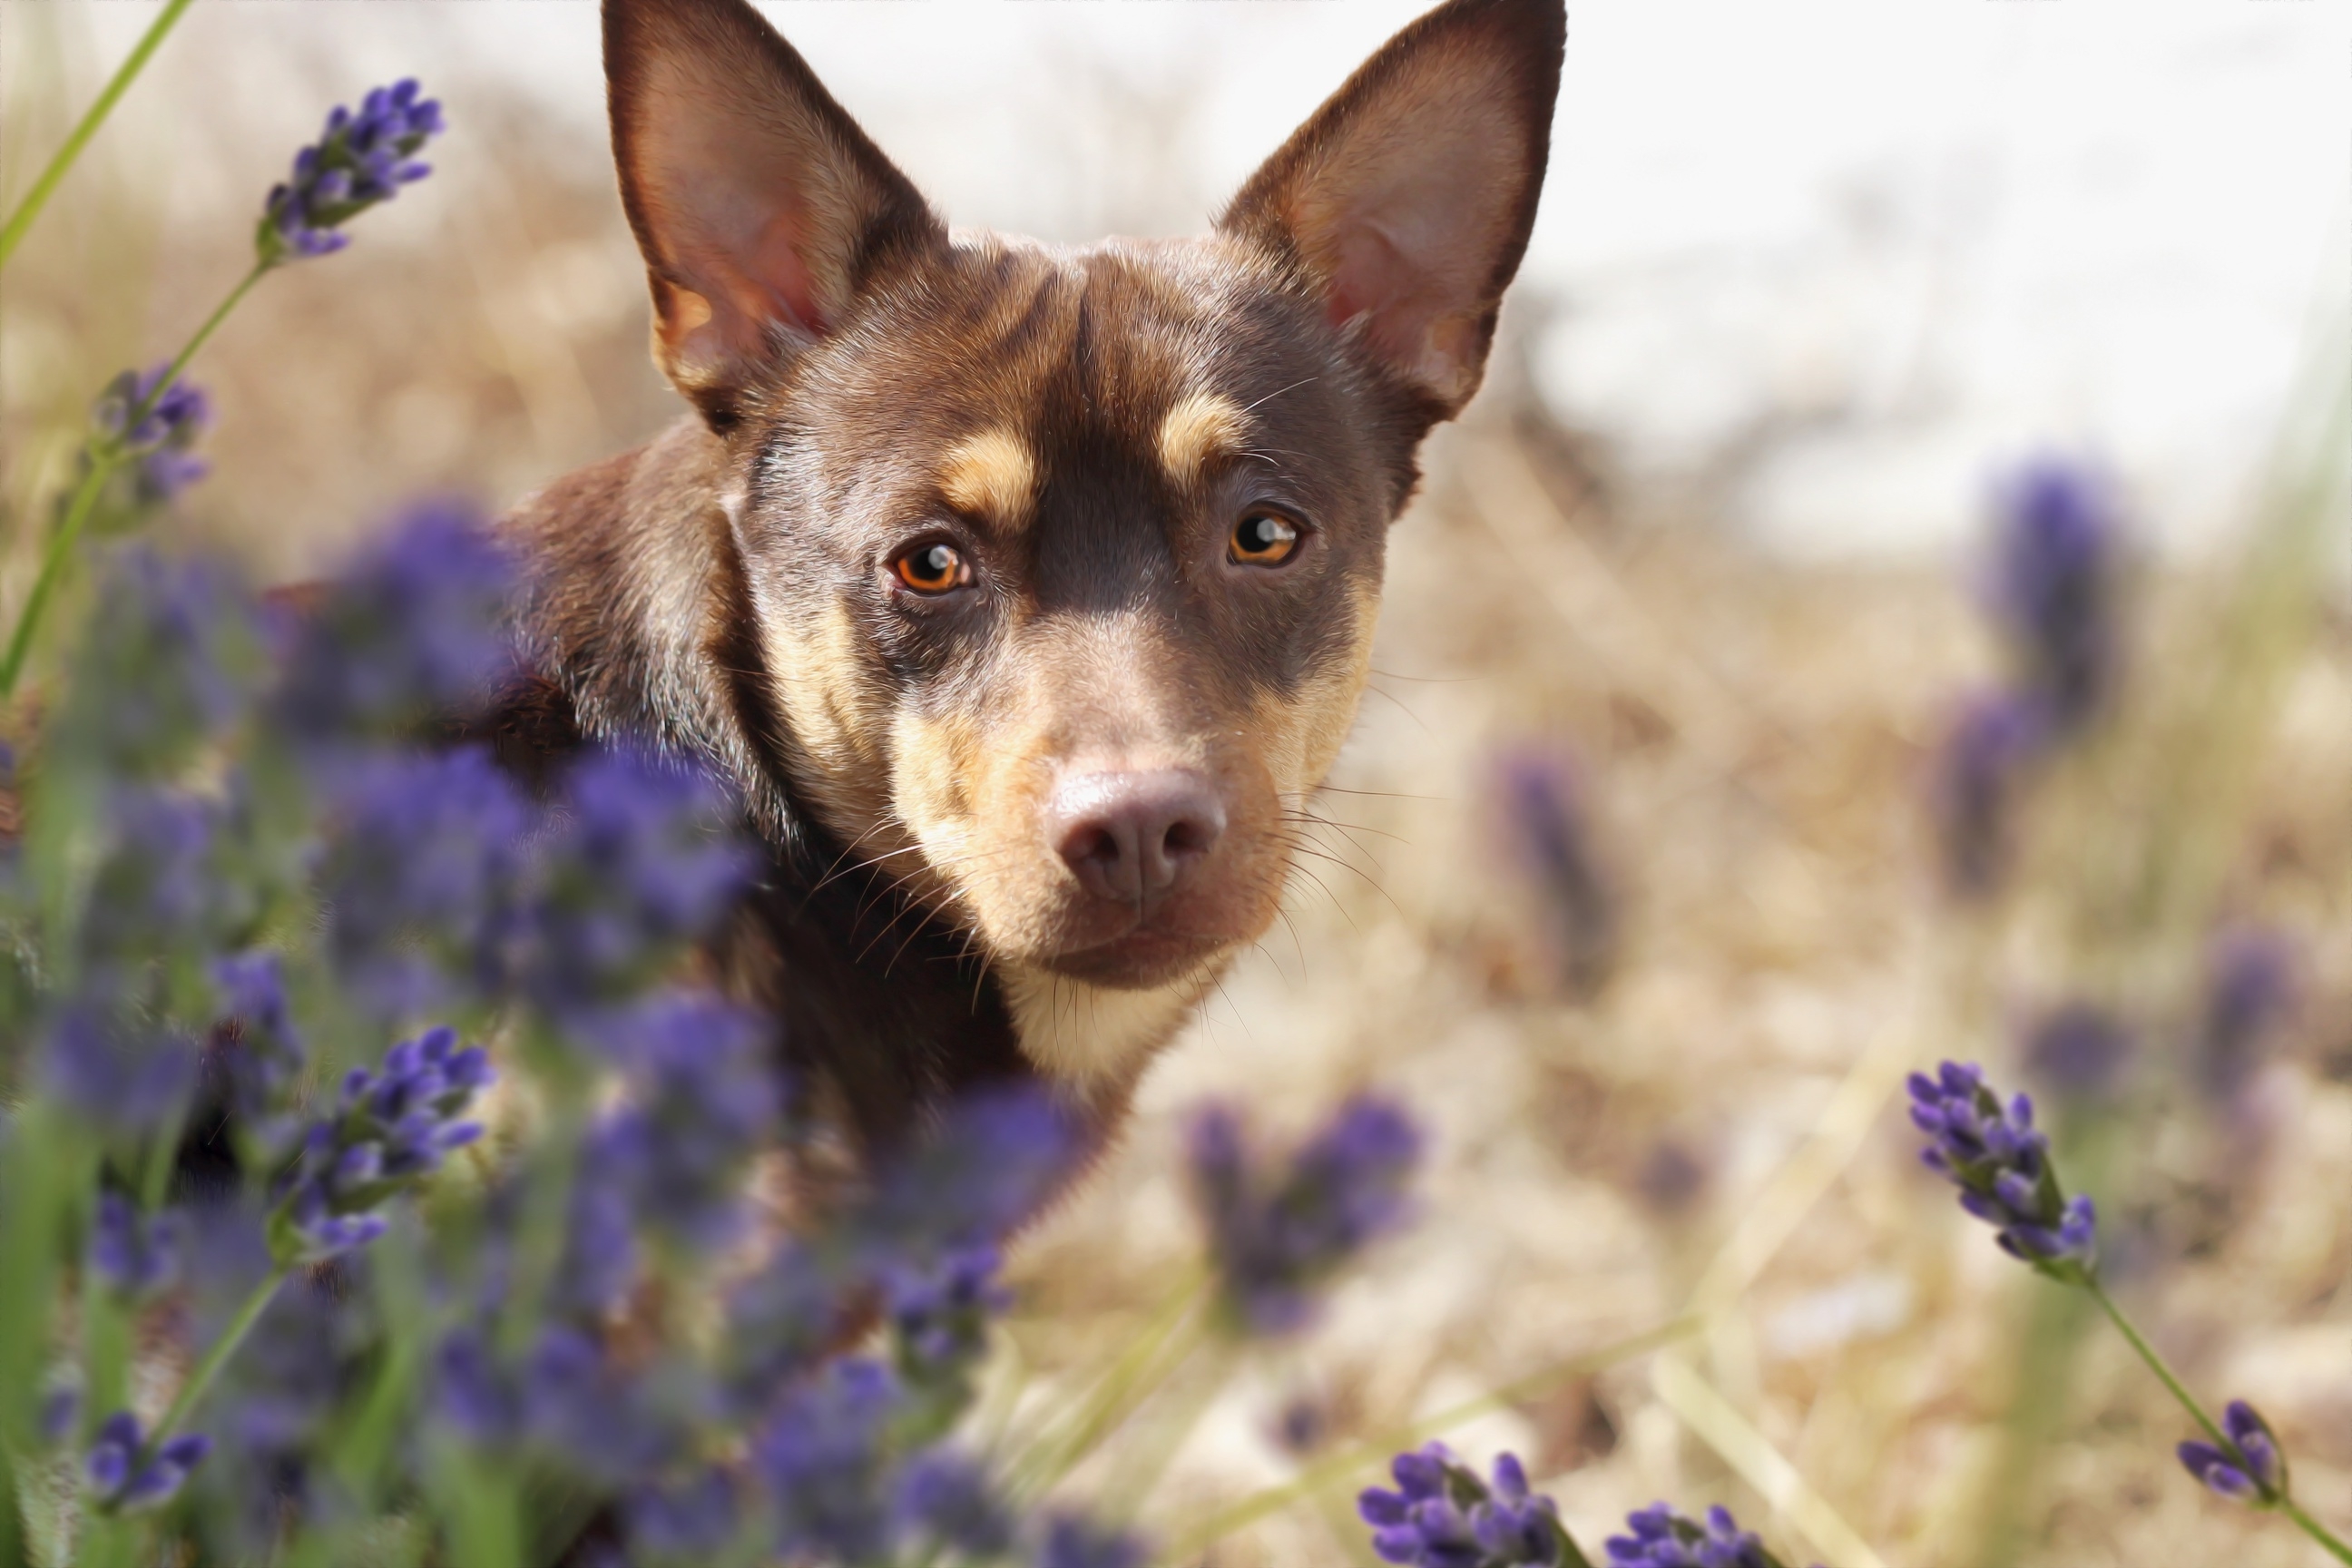 A little puppy in purple flowers.